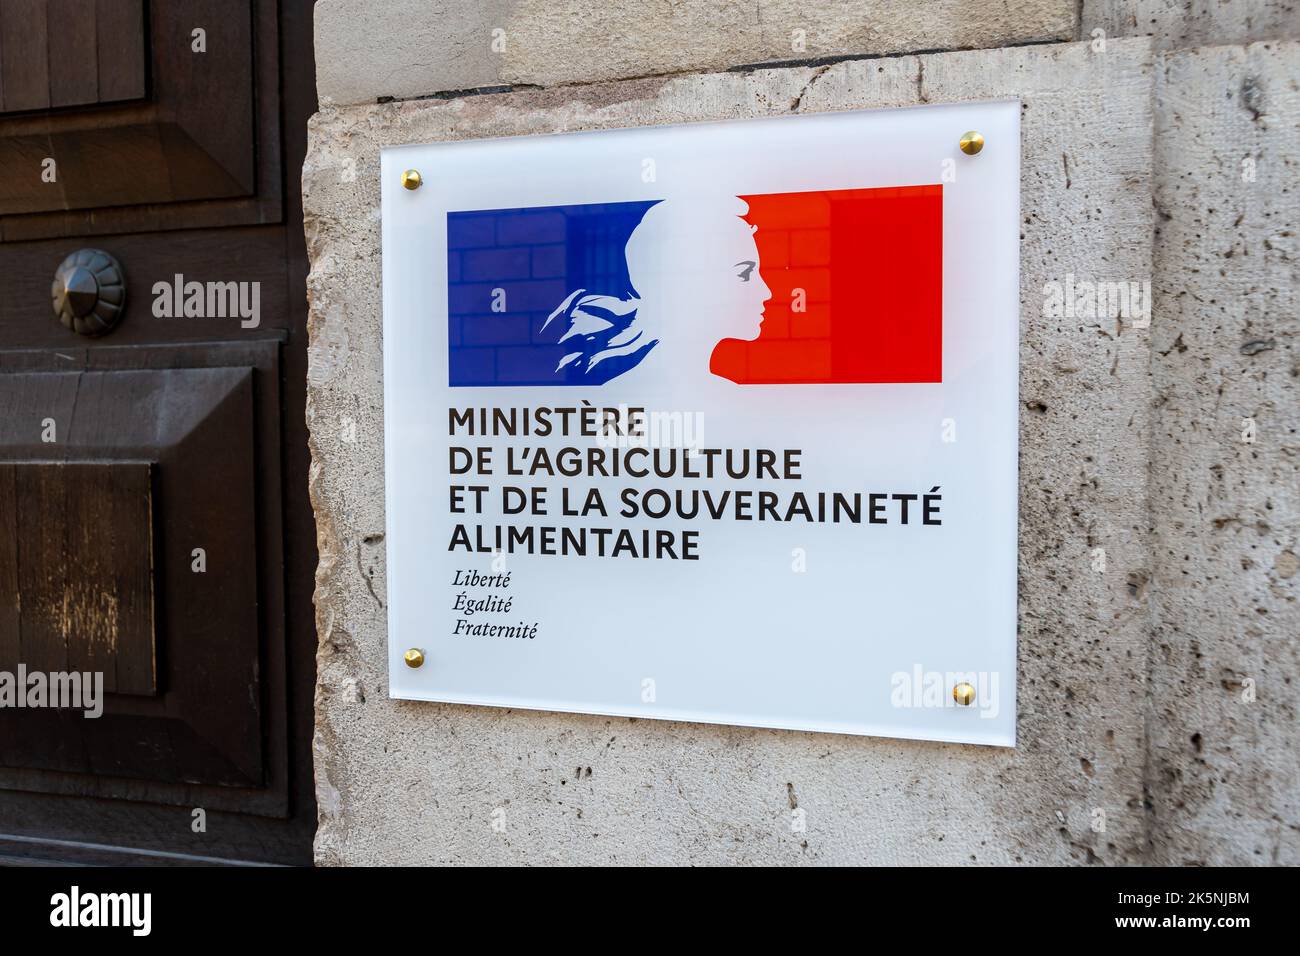 Gros plan de la plaque fixée à l'entrée du Ministère de l'agriculture et de la souveraineté alimentaire, Paris, France Banque D'Images